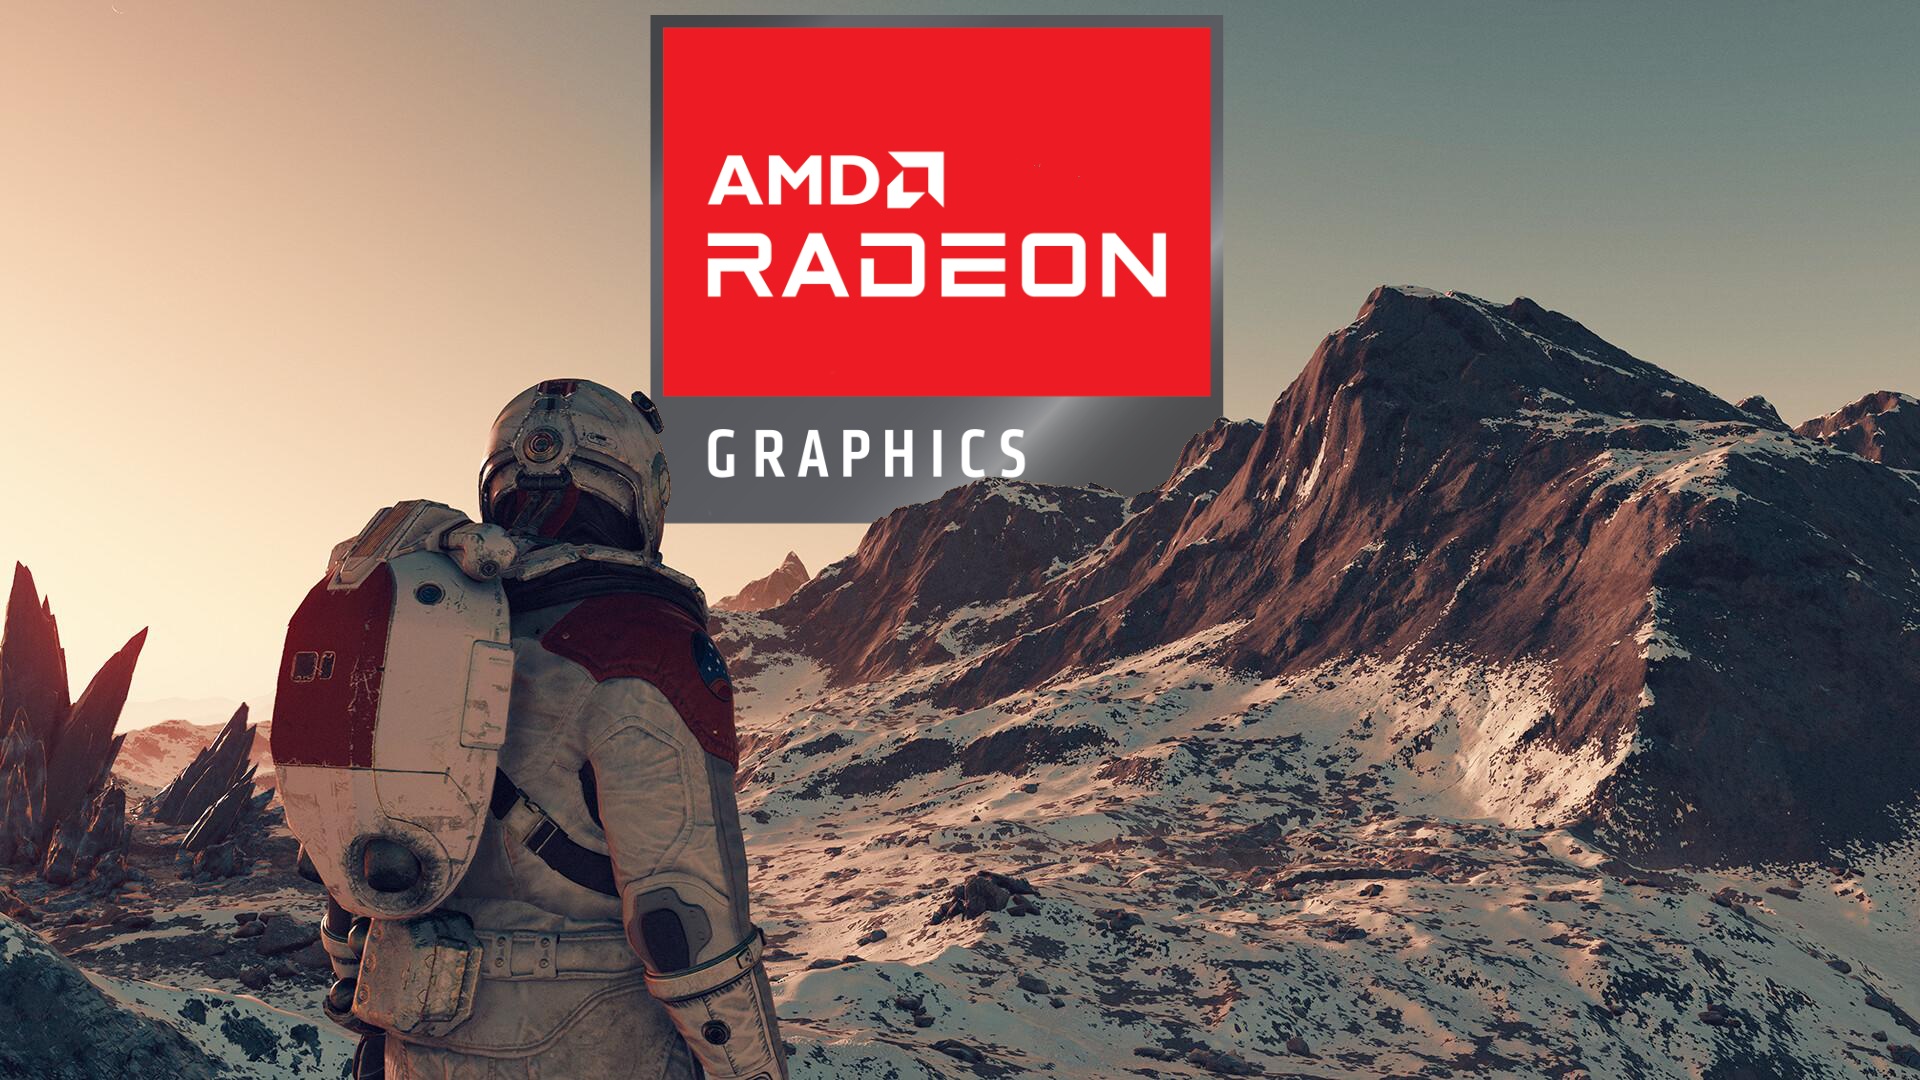 #Die PC-Partnerschaft zwischen Starfield und AMD könnte Nvidias Premium-Features blockieren